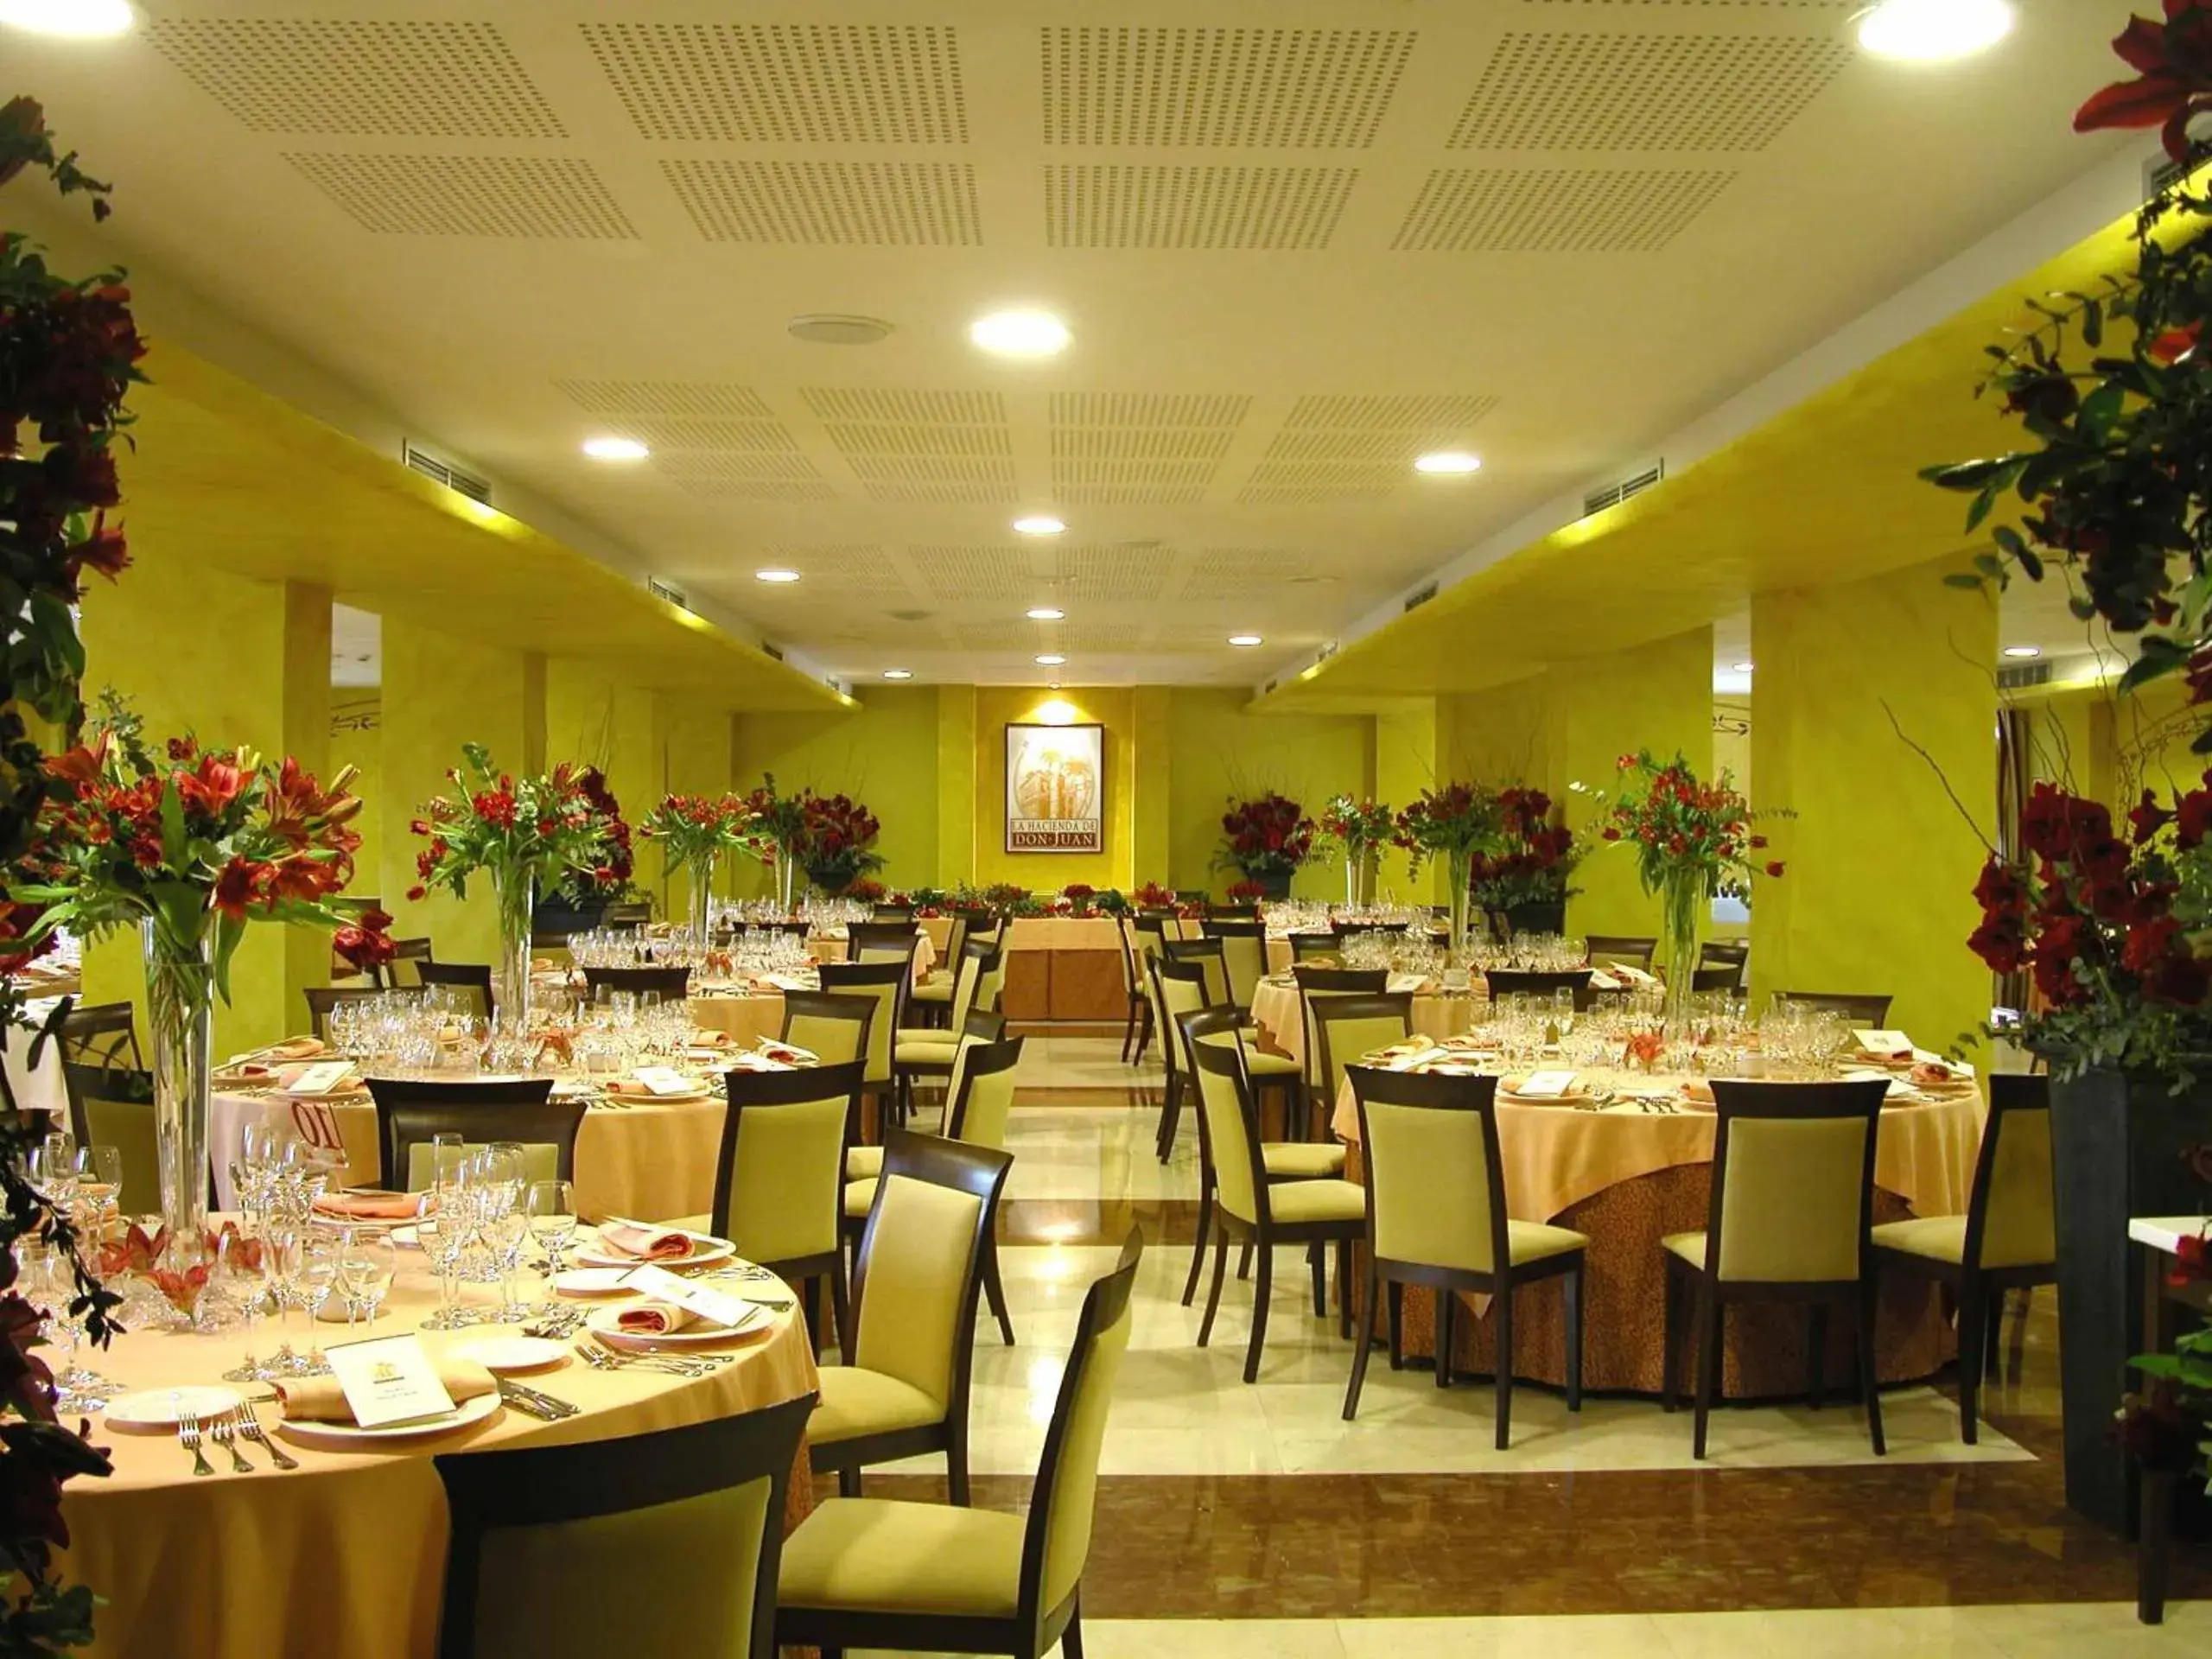 Banquet/Function facilities, Restaurant/Places to Eat in Hotel Spa La Hacienda De Don Juan